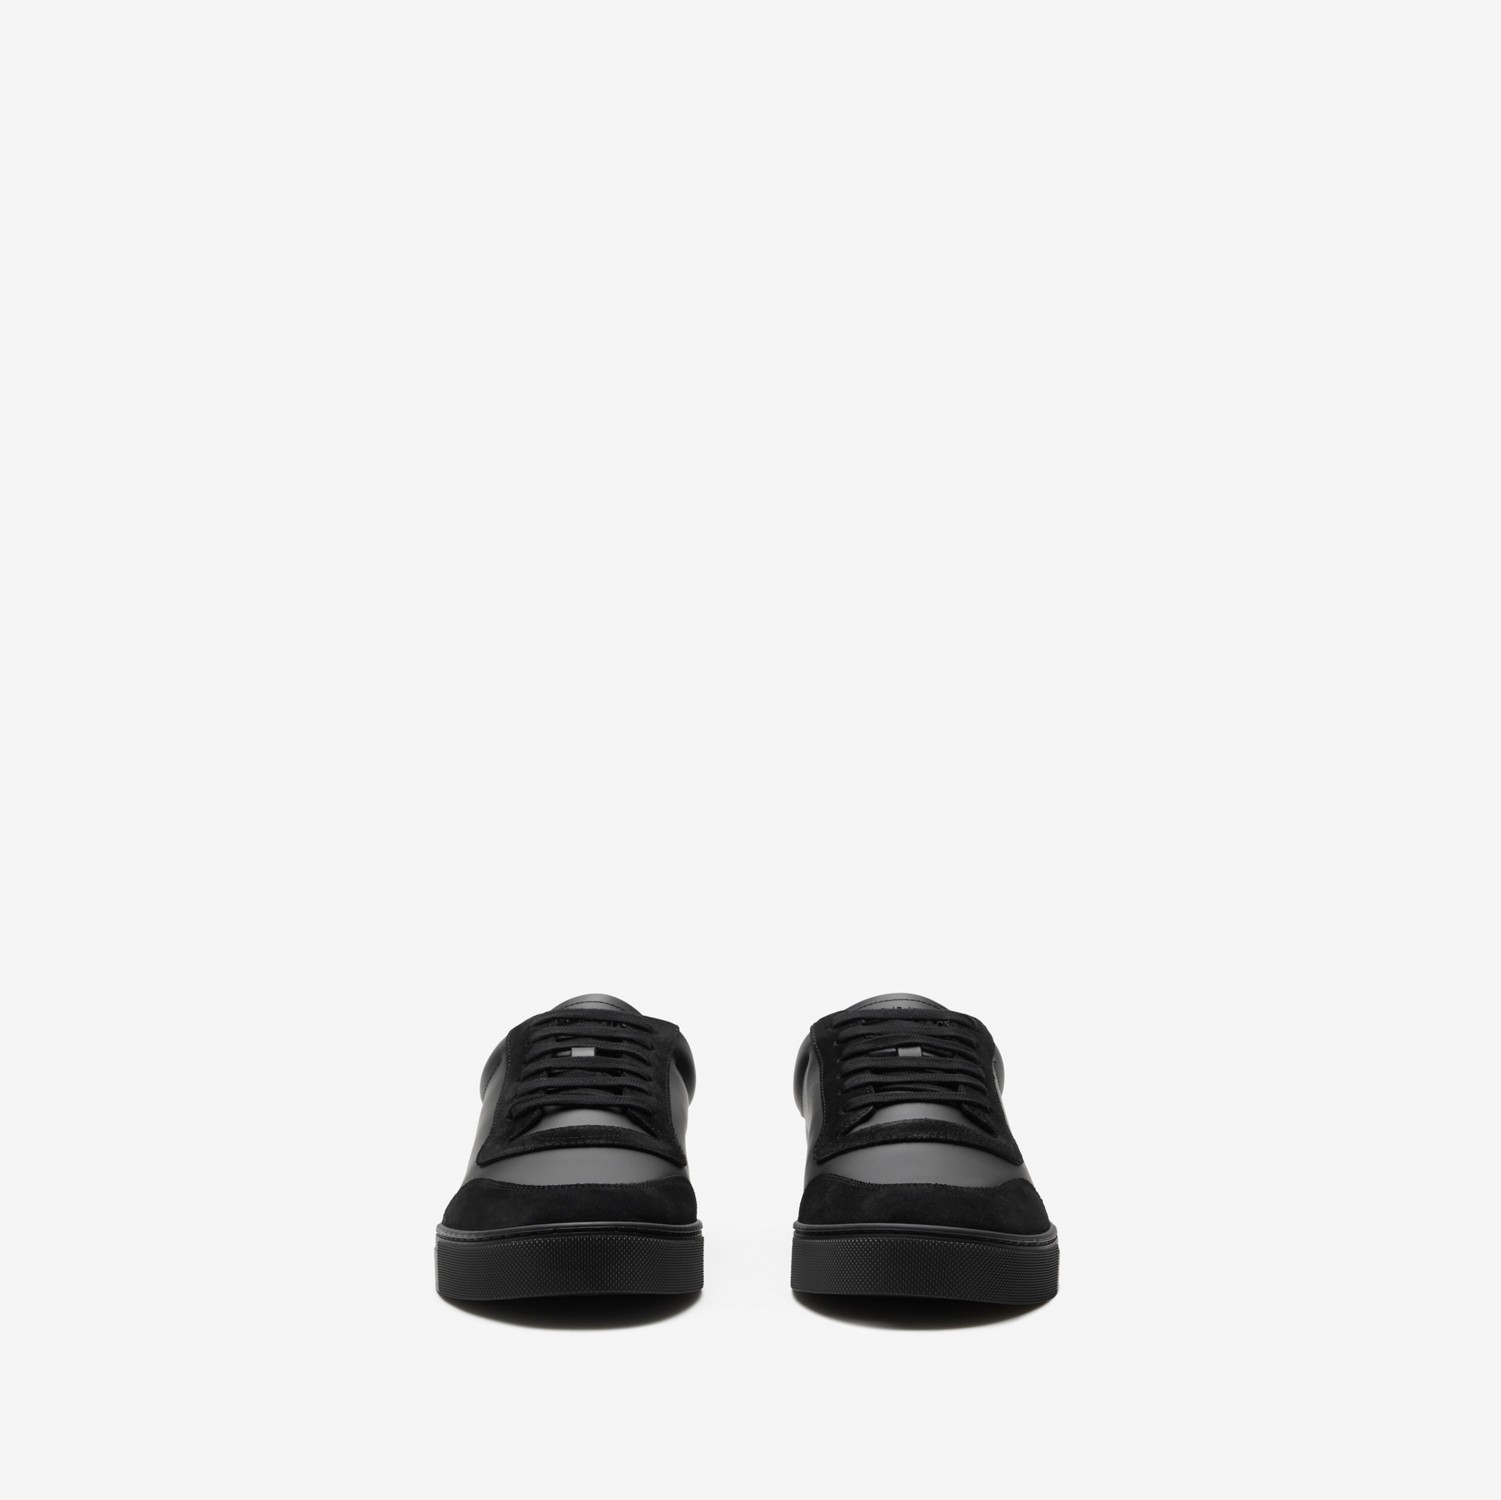 Sneaker in pelle e cotone Check (Nero/royal) - Uomo | Sito ufficiale Burberry®